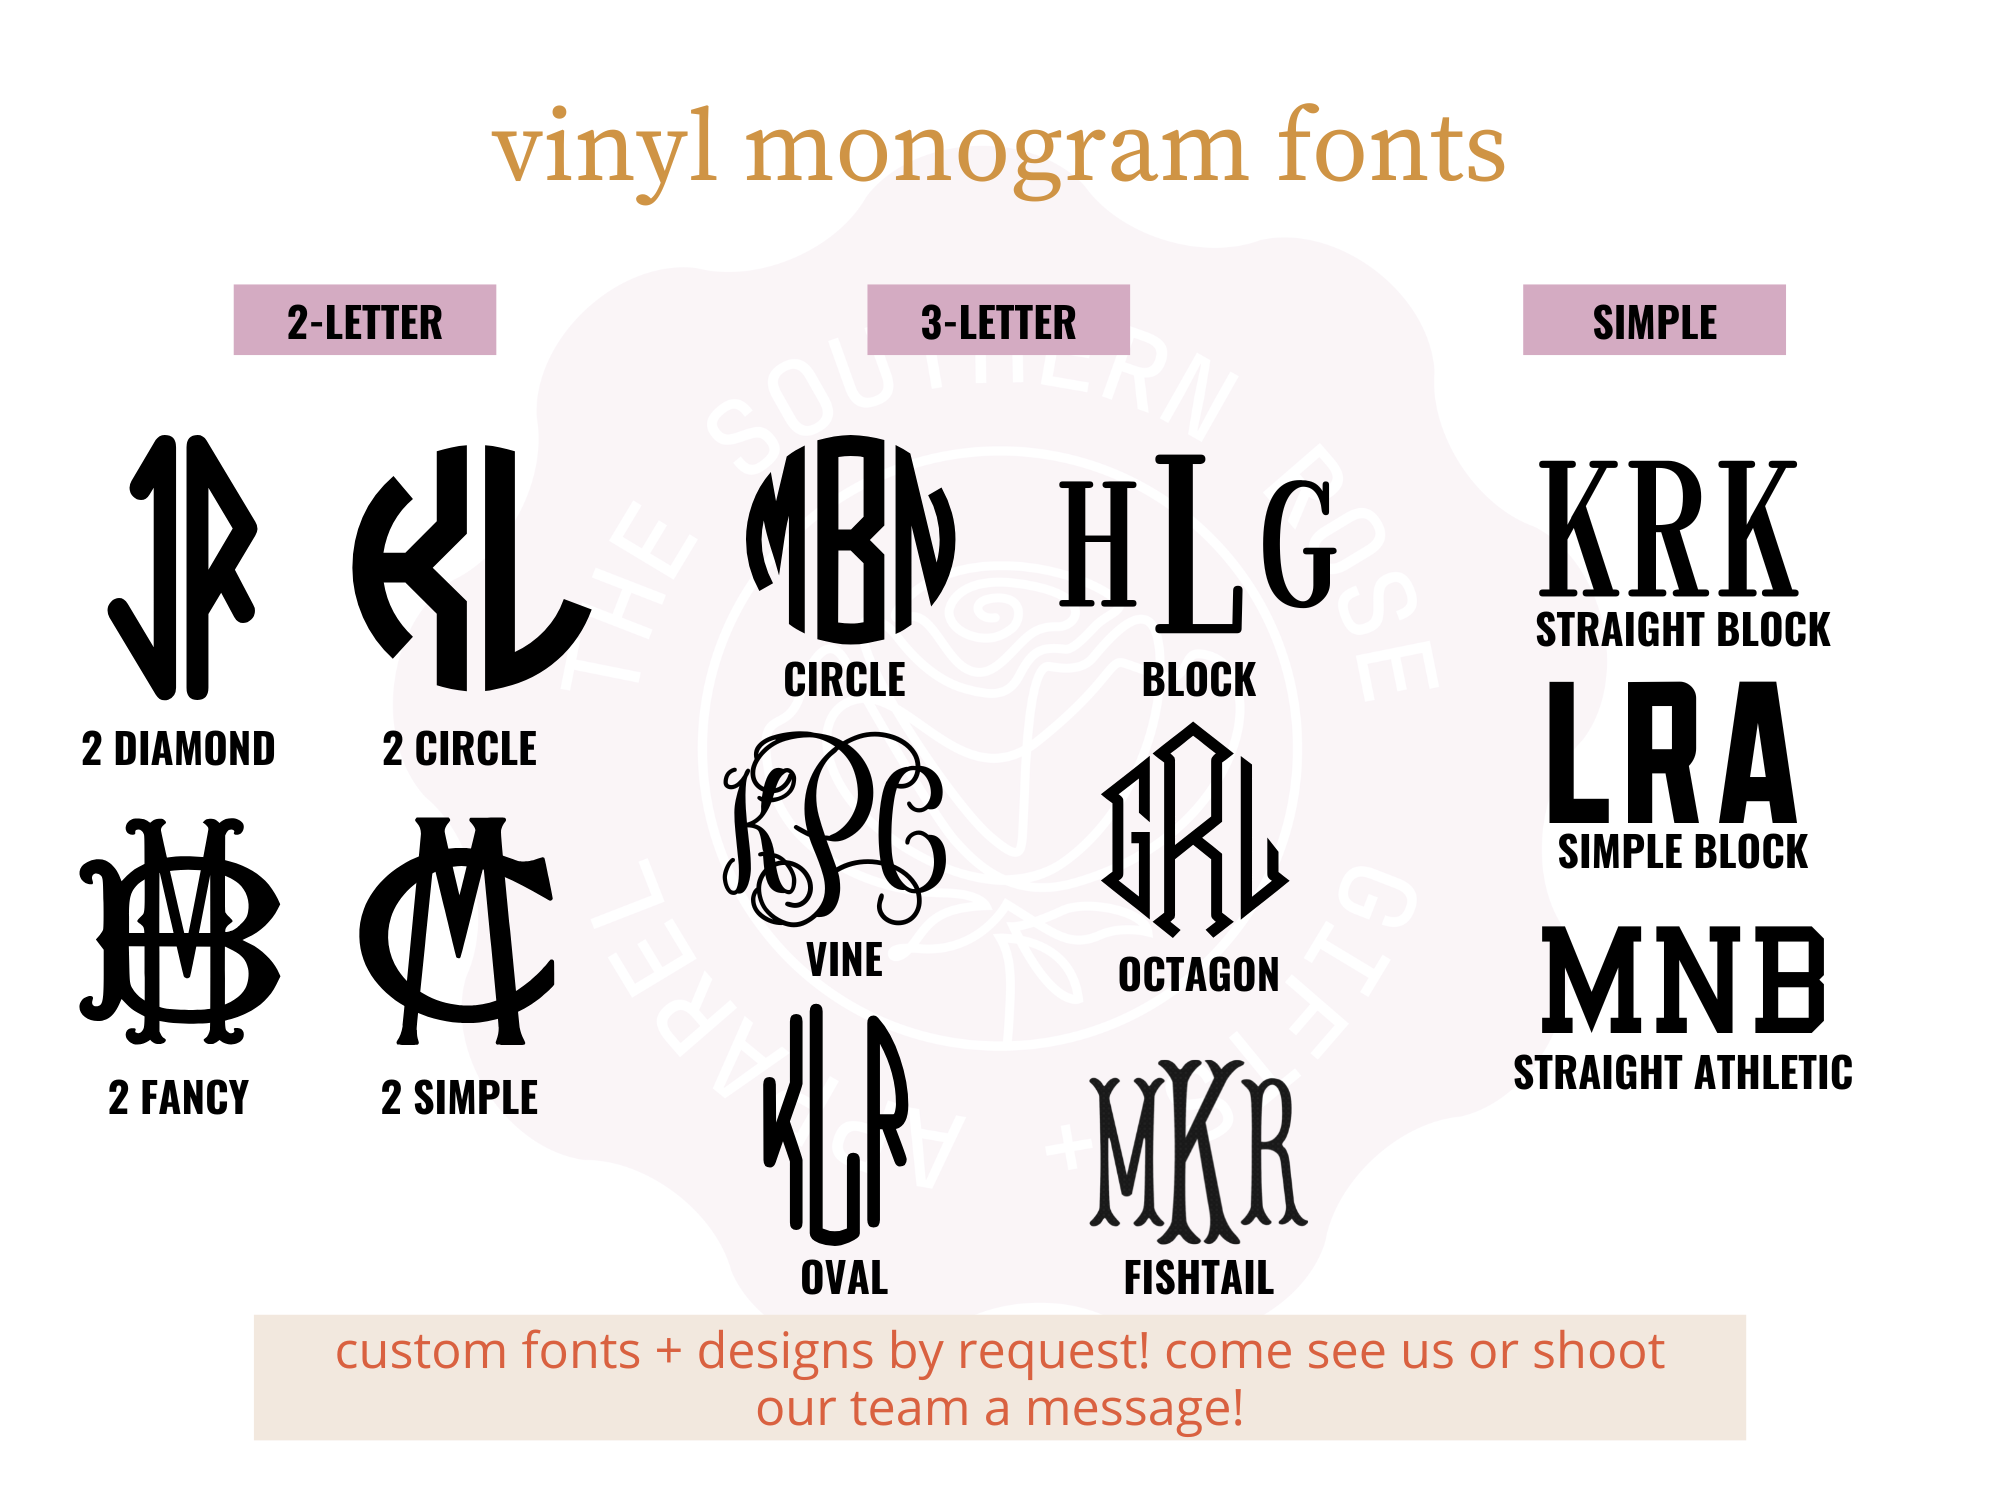 https://cdn11.bigcommerce.com/s-qiszfjgfwj/images/stencil/original/products/3686/15222/tsr2-vinyl-monogram-fonts__12735.1677003056.png?c=2